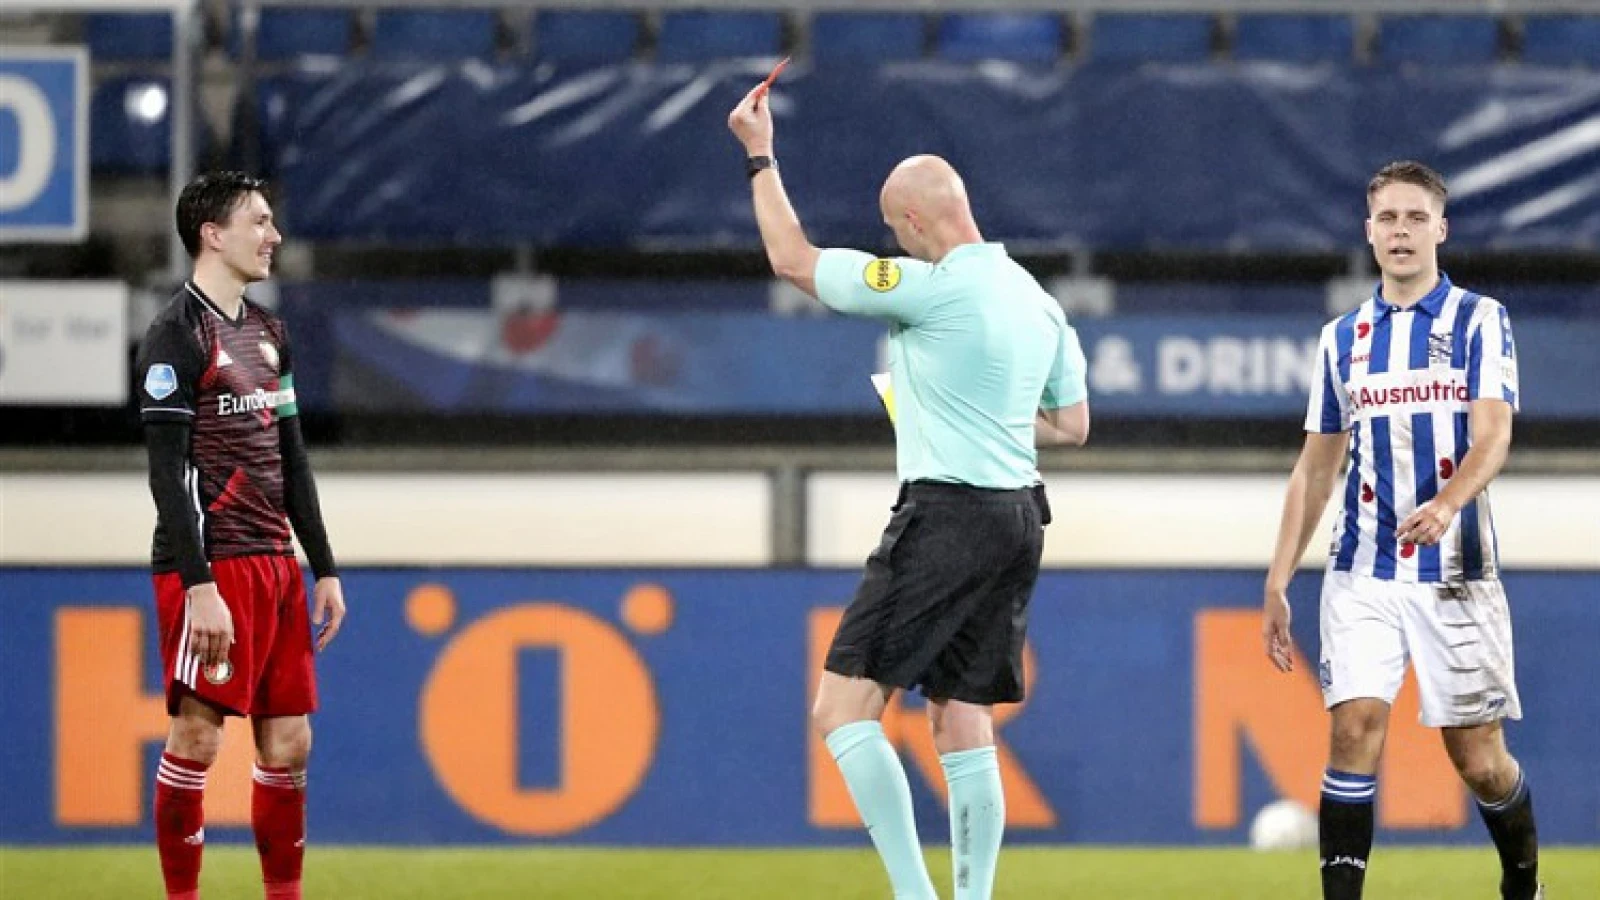 De kranten: 'Dubbele mokerslag voor Feyenoord'